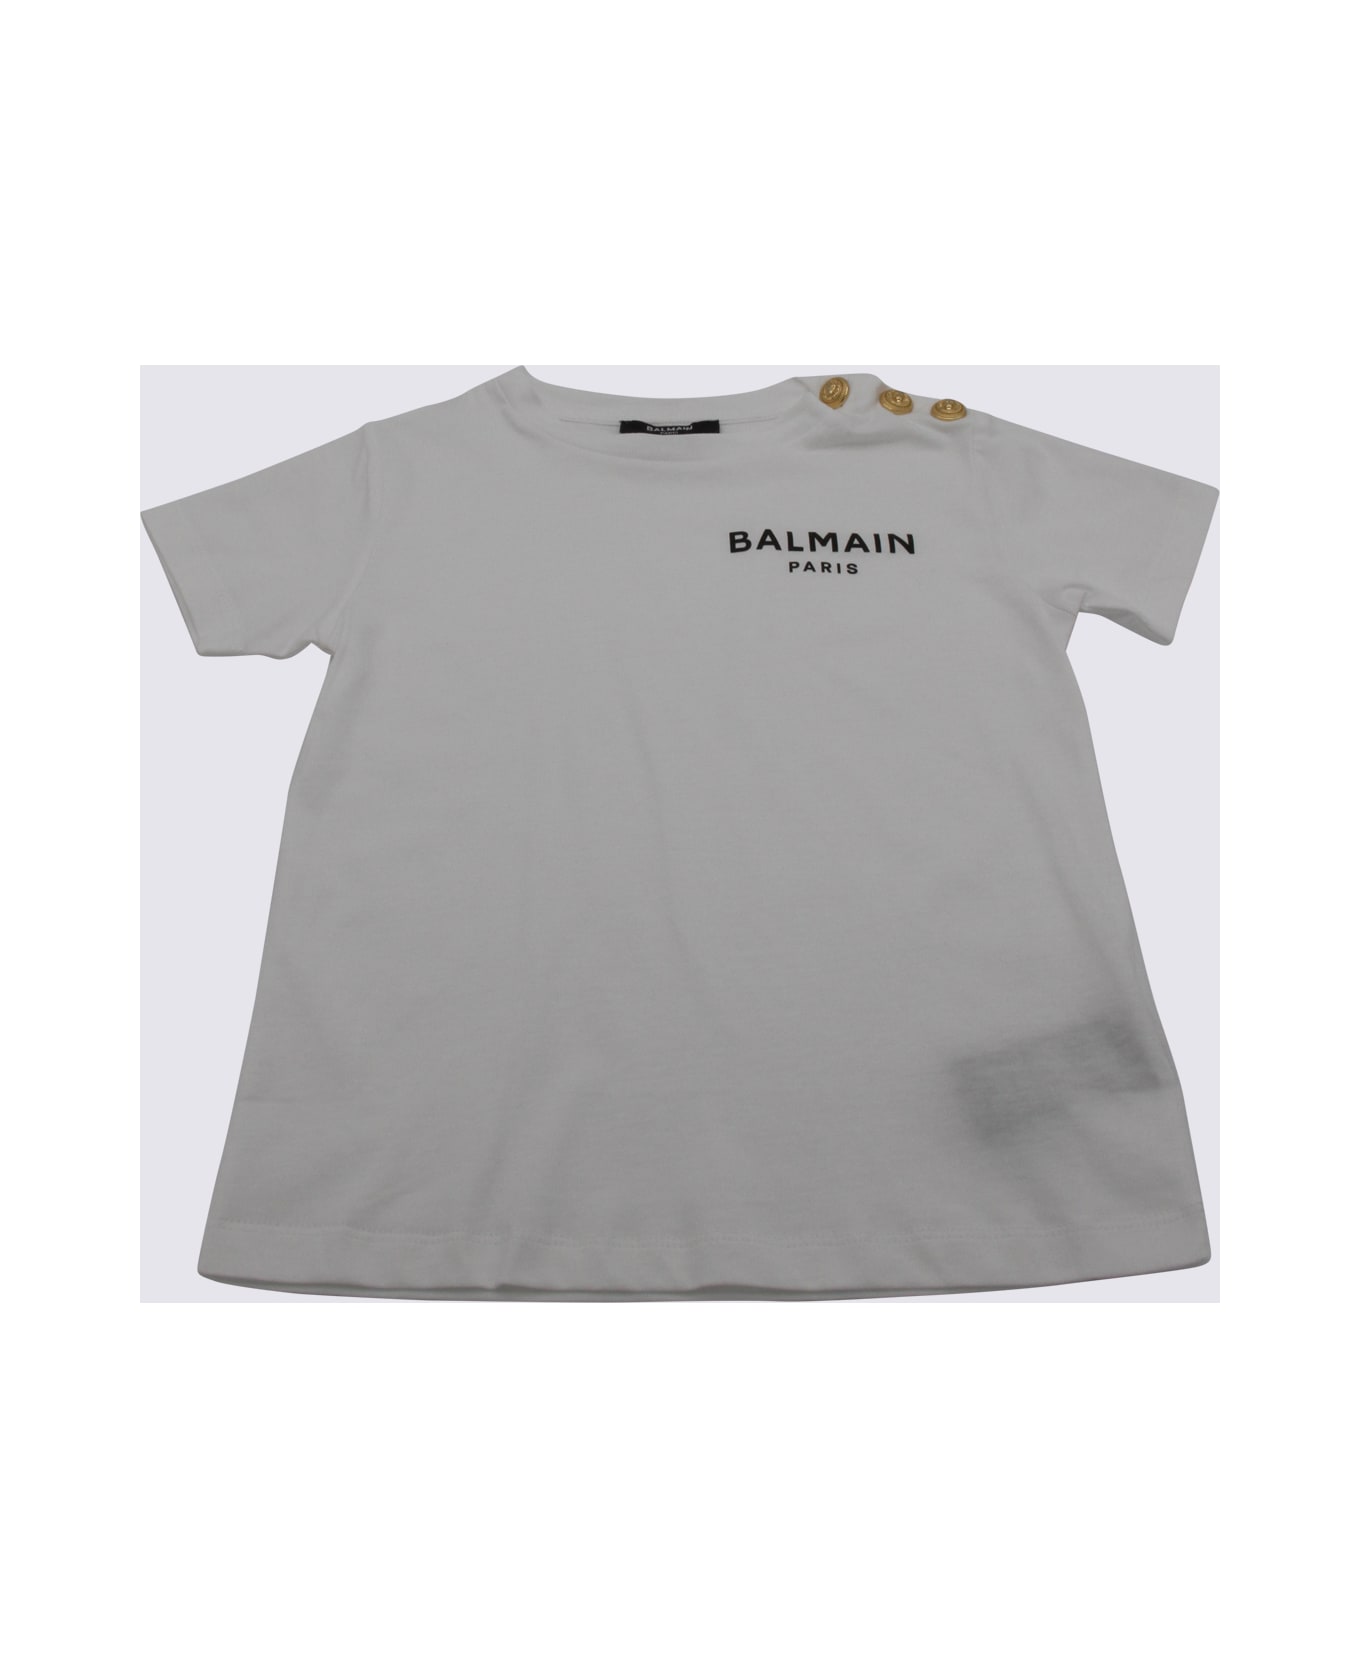 Balmain White And Gold Cotton Logo T-shirt - White